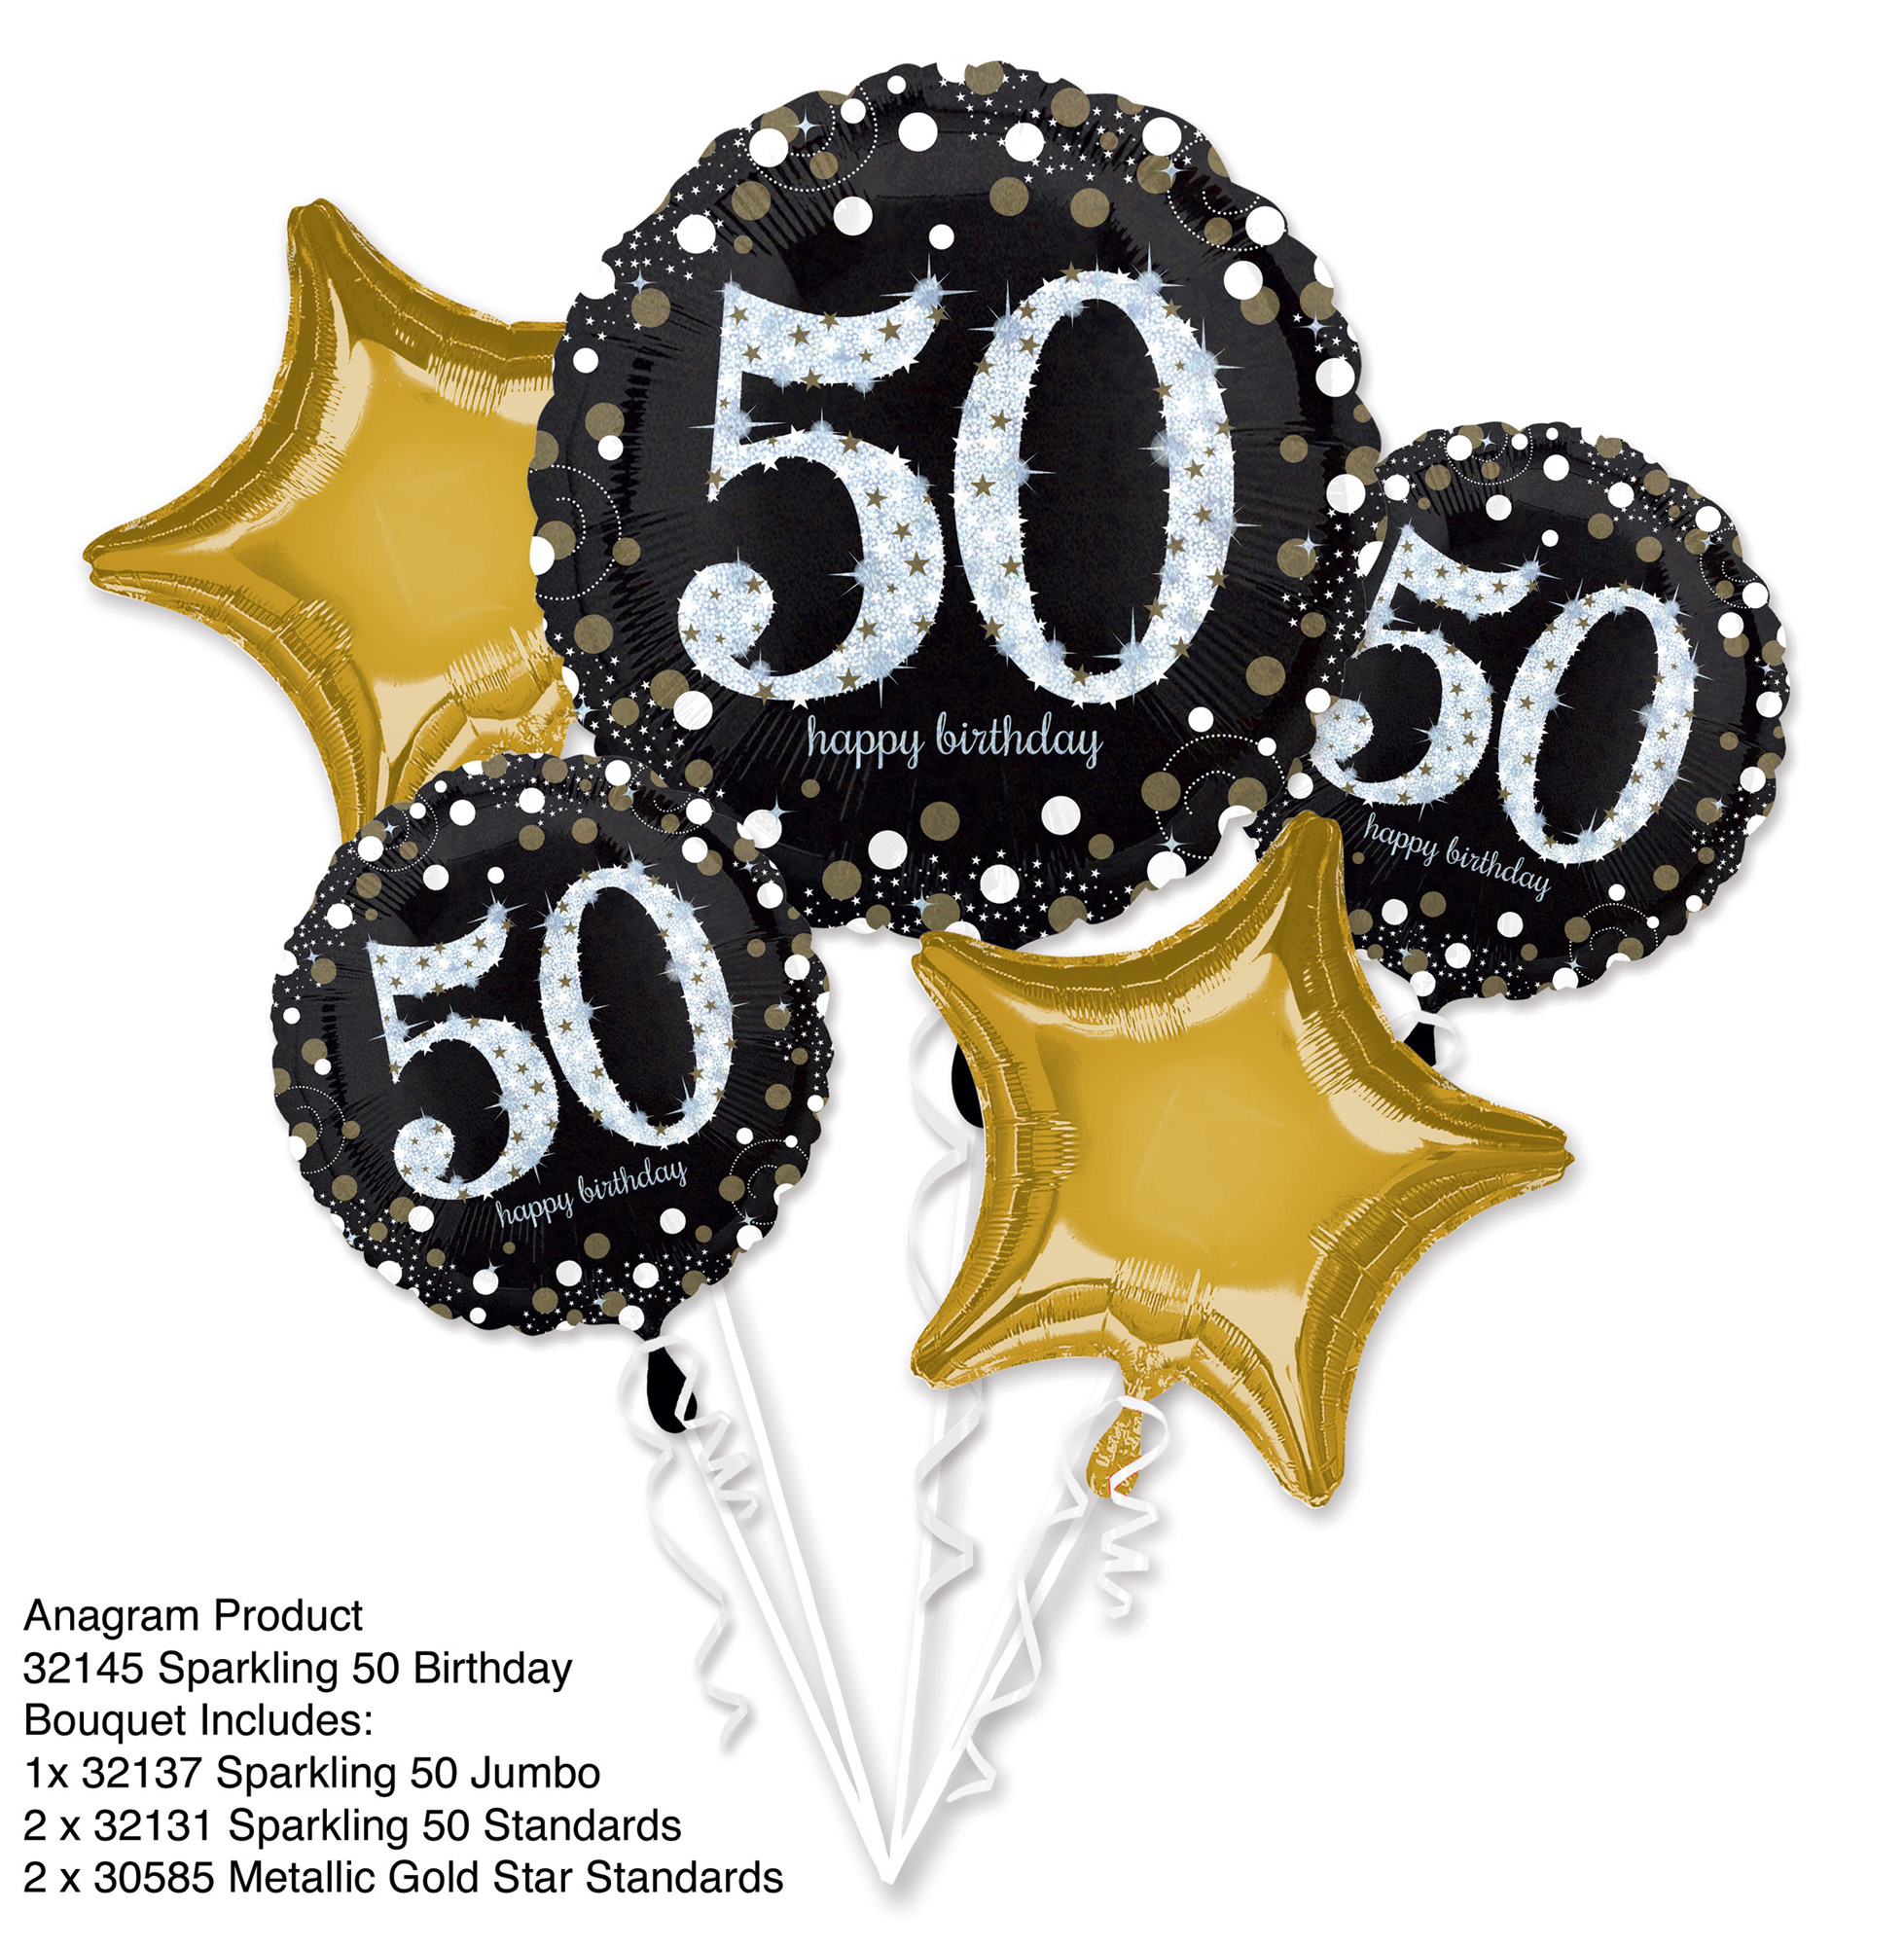 Bouquet Sparkling Birthday 50